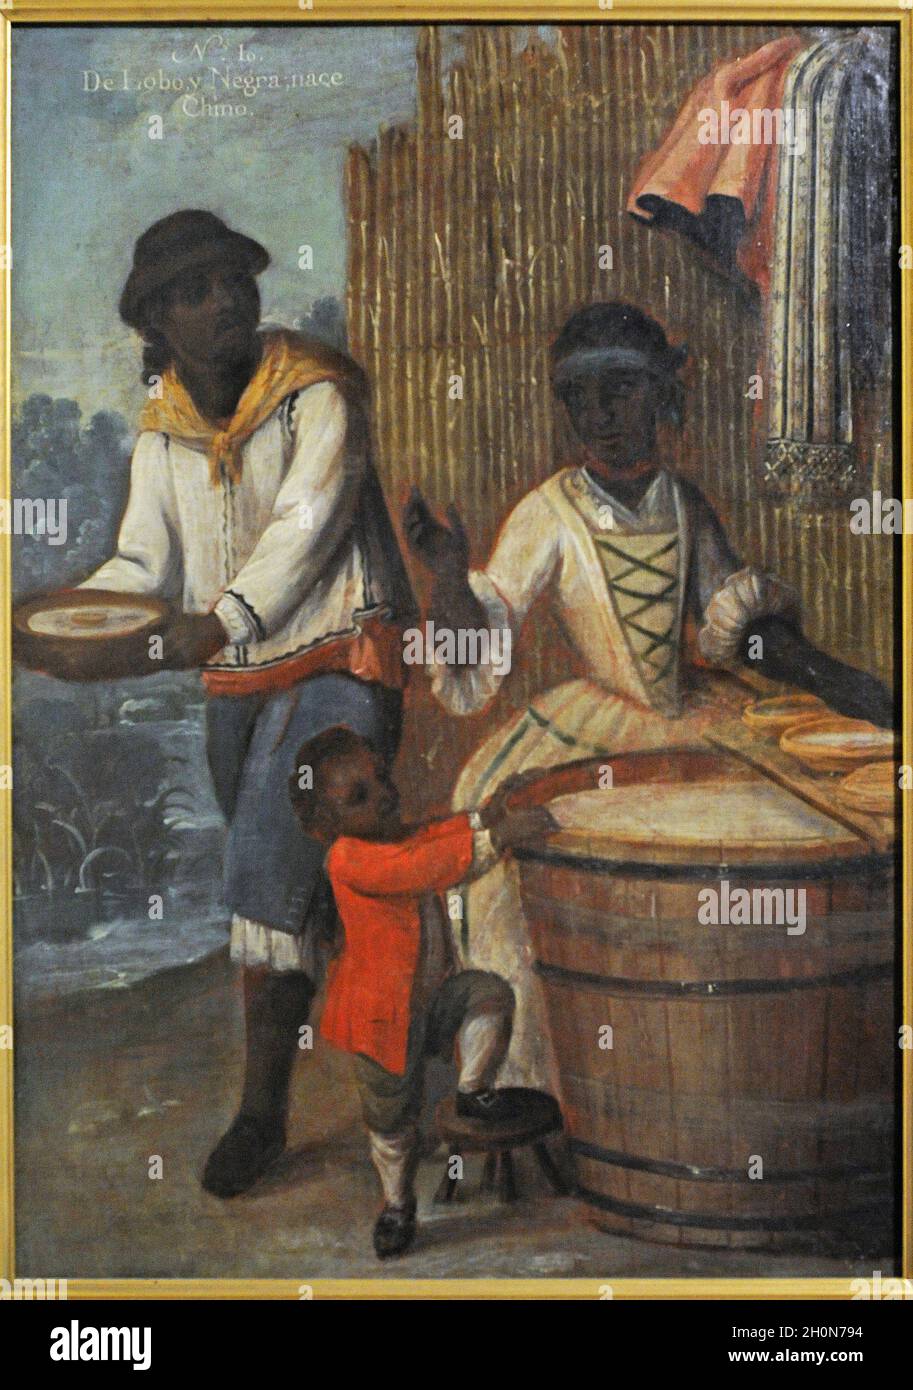 Andres de Islas (Maler, der in der zweiten Hälfte des 18. Jahrhunderts tätig war). Castas, Nr. 10. De lobo y negra, nace Chino (aus Wolf und Black, ein Chino Stockfoto